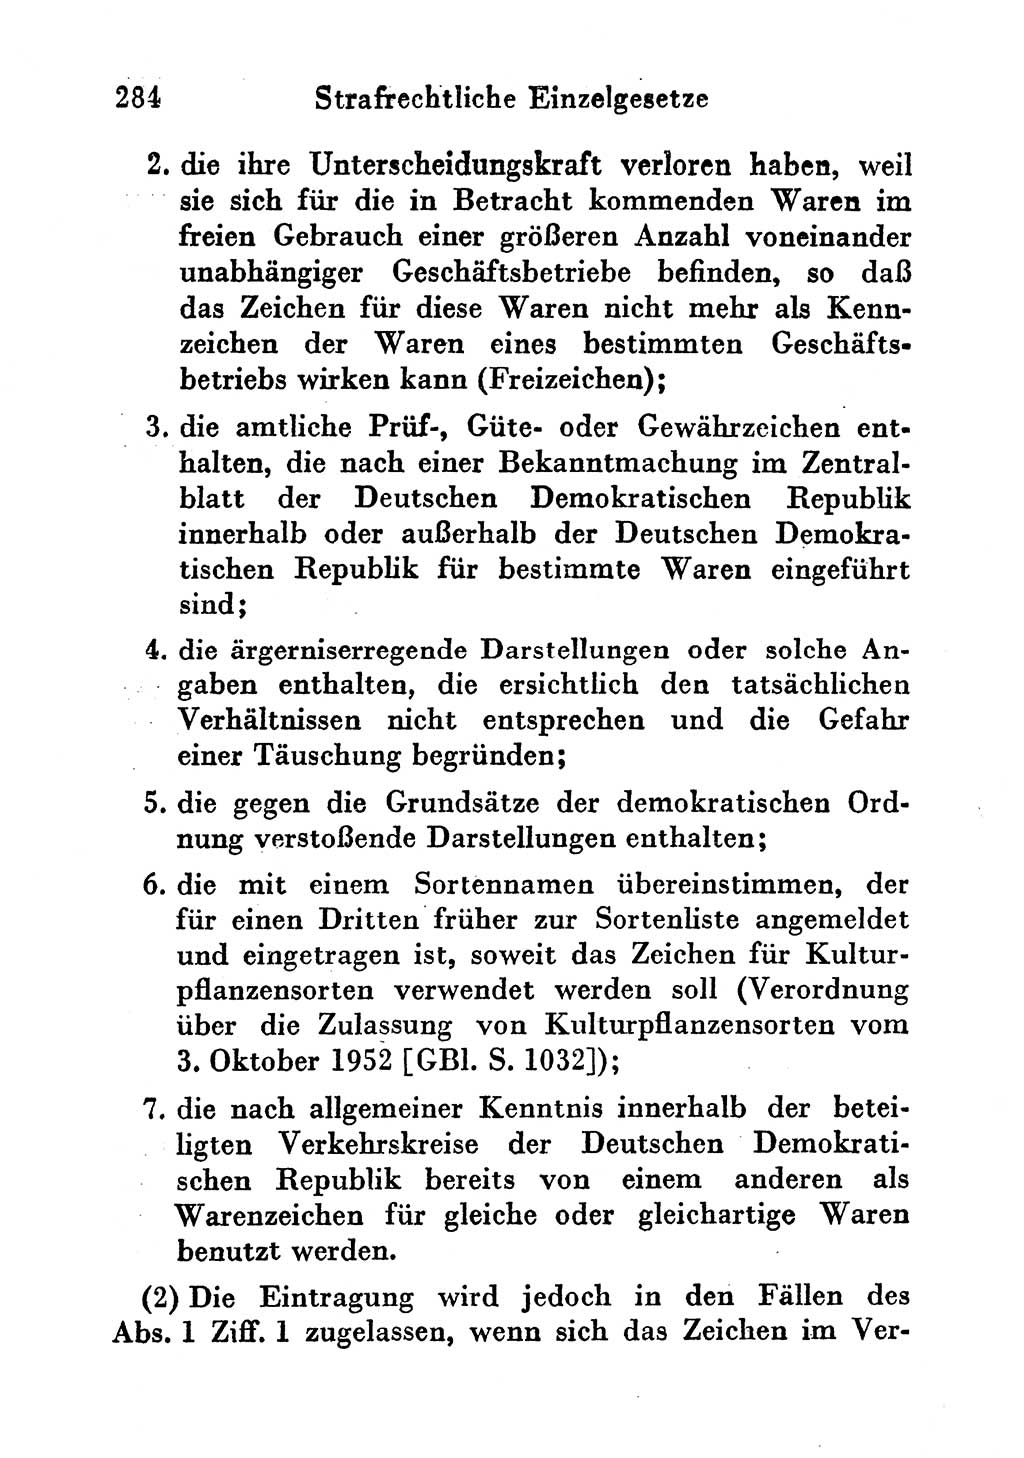 Strafgesetzbuch (StGB) und andere Strafgesetze [Deutsche Demokratische Republik (DDR)] 1956, Seite 284 (StGB Strafges. DDR 1956, S. 284)